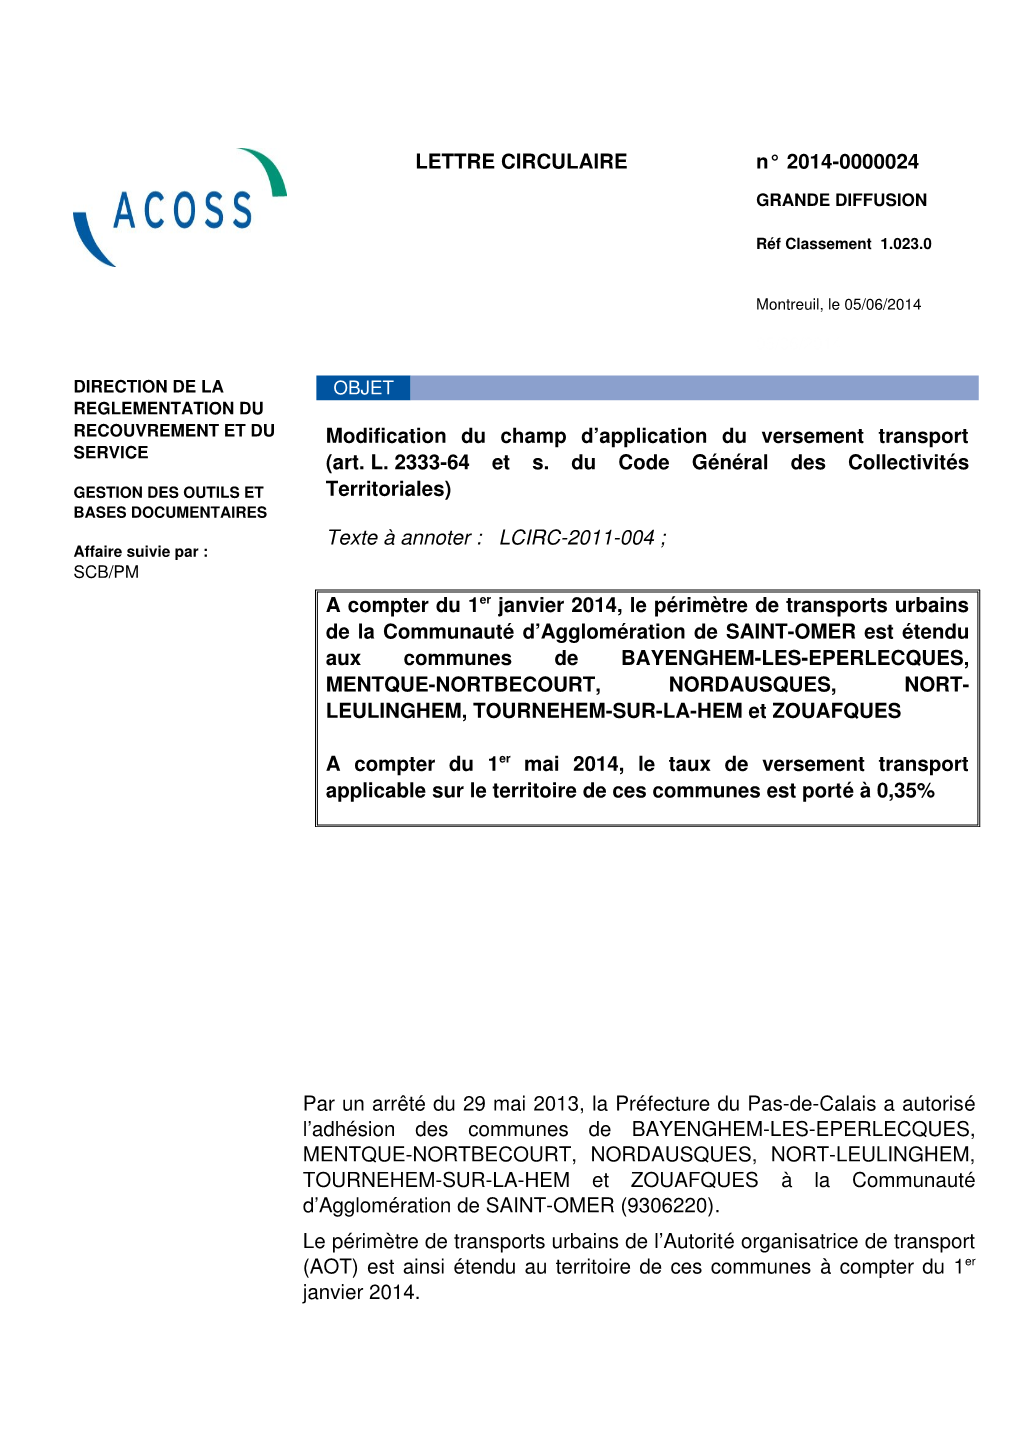 LETTRE CIRCULAIRE N° 20140000024 Modification Du Champ D'application Du Versement Transport